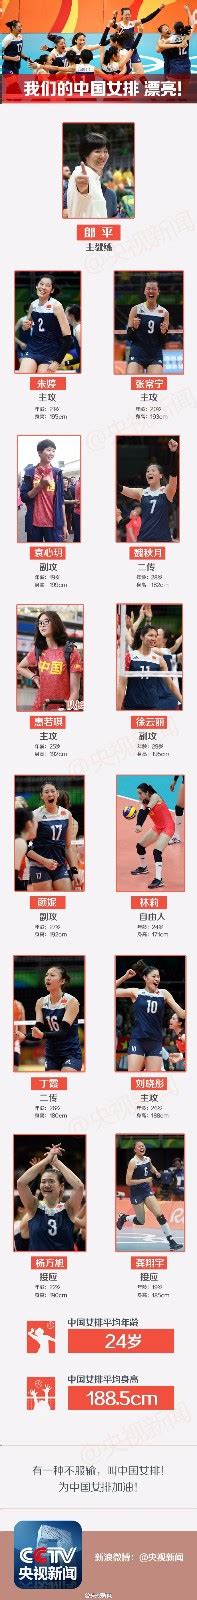 2016年里约奥运会中国女排12人名单,女排分组赛程最新消息图片(2)_免费QQ乐园